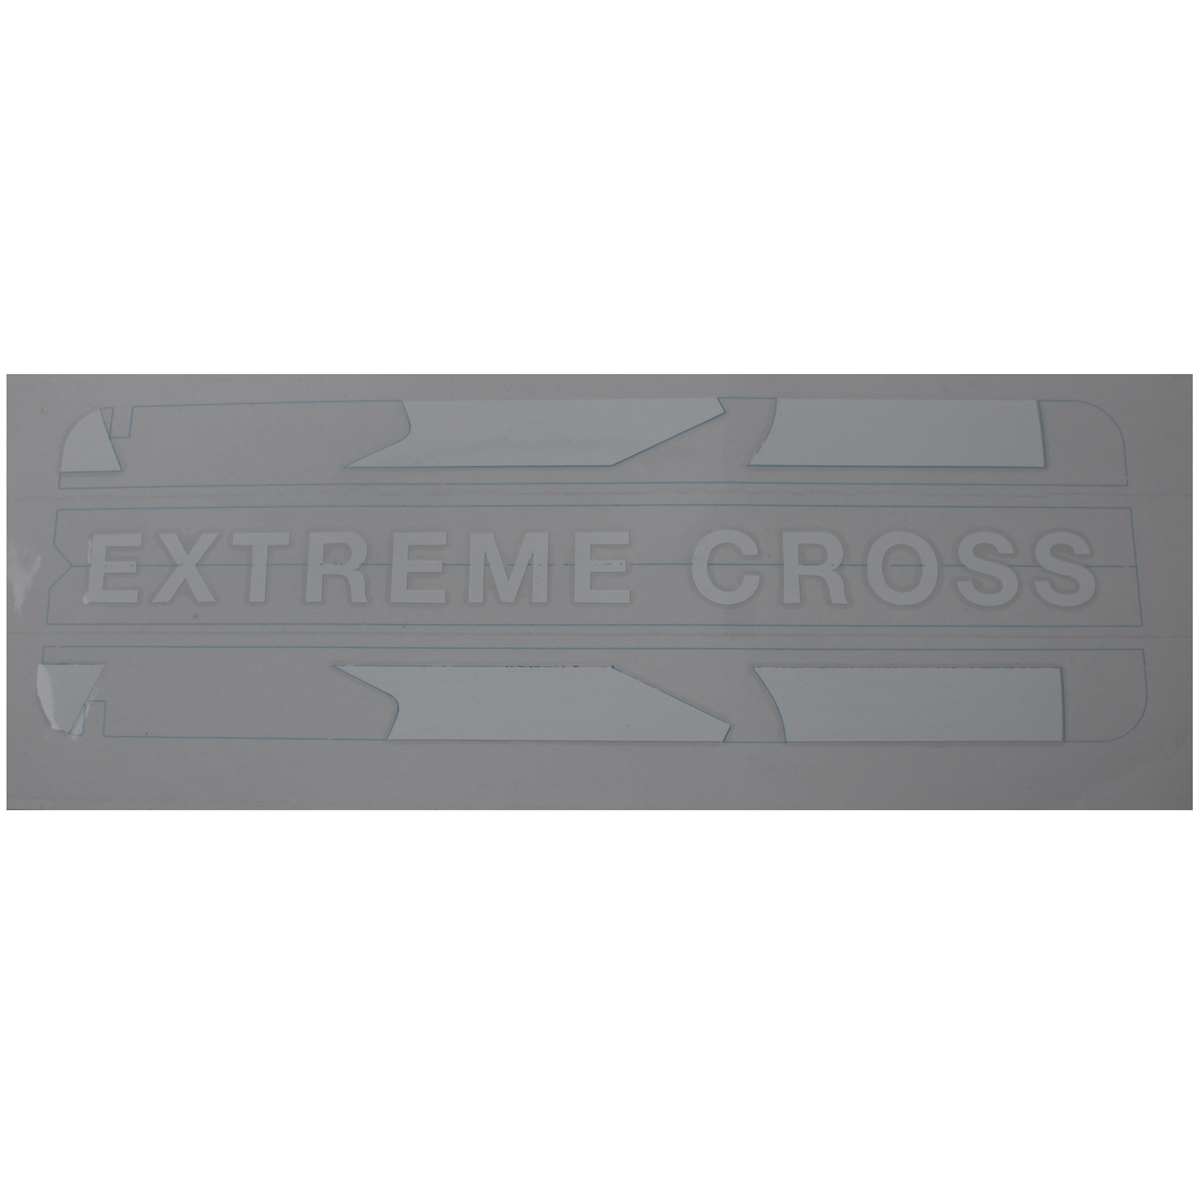 Adesivo da tampa da bateria Extreme Cross branco